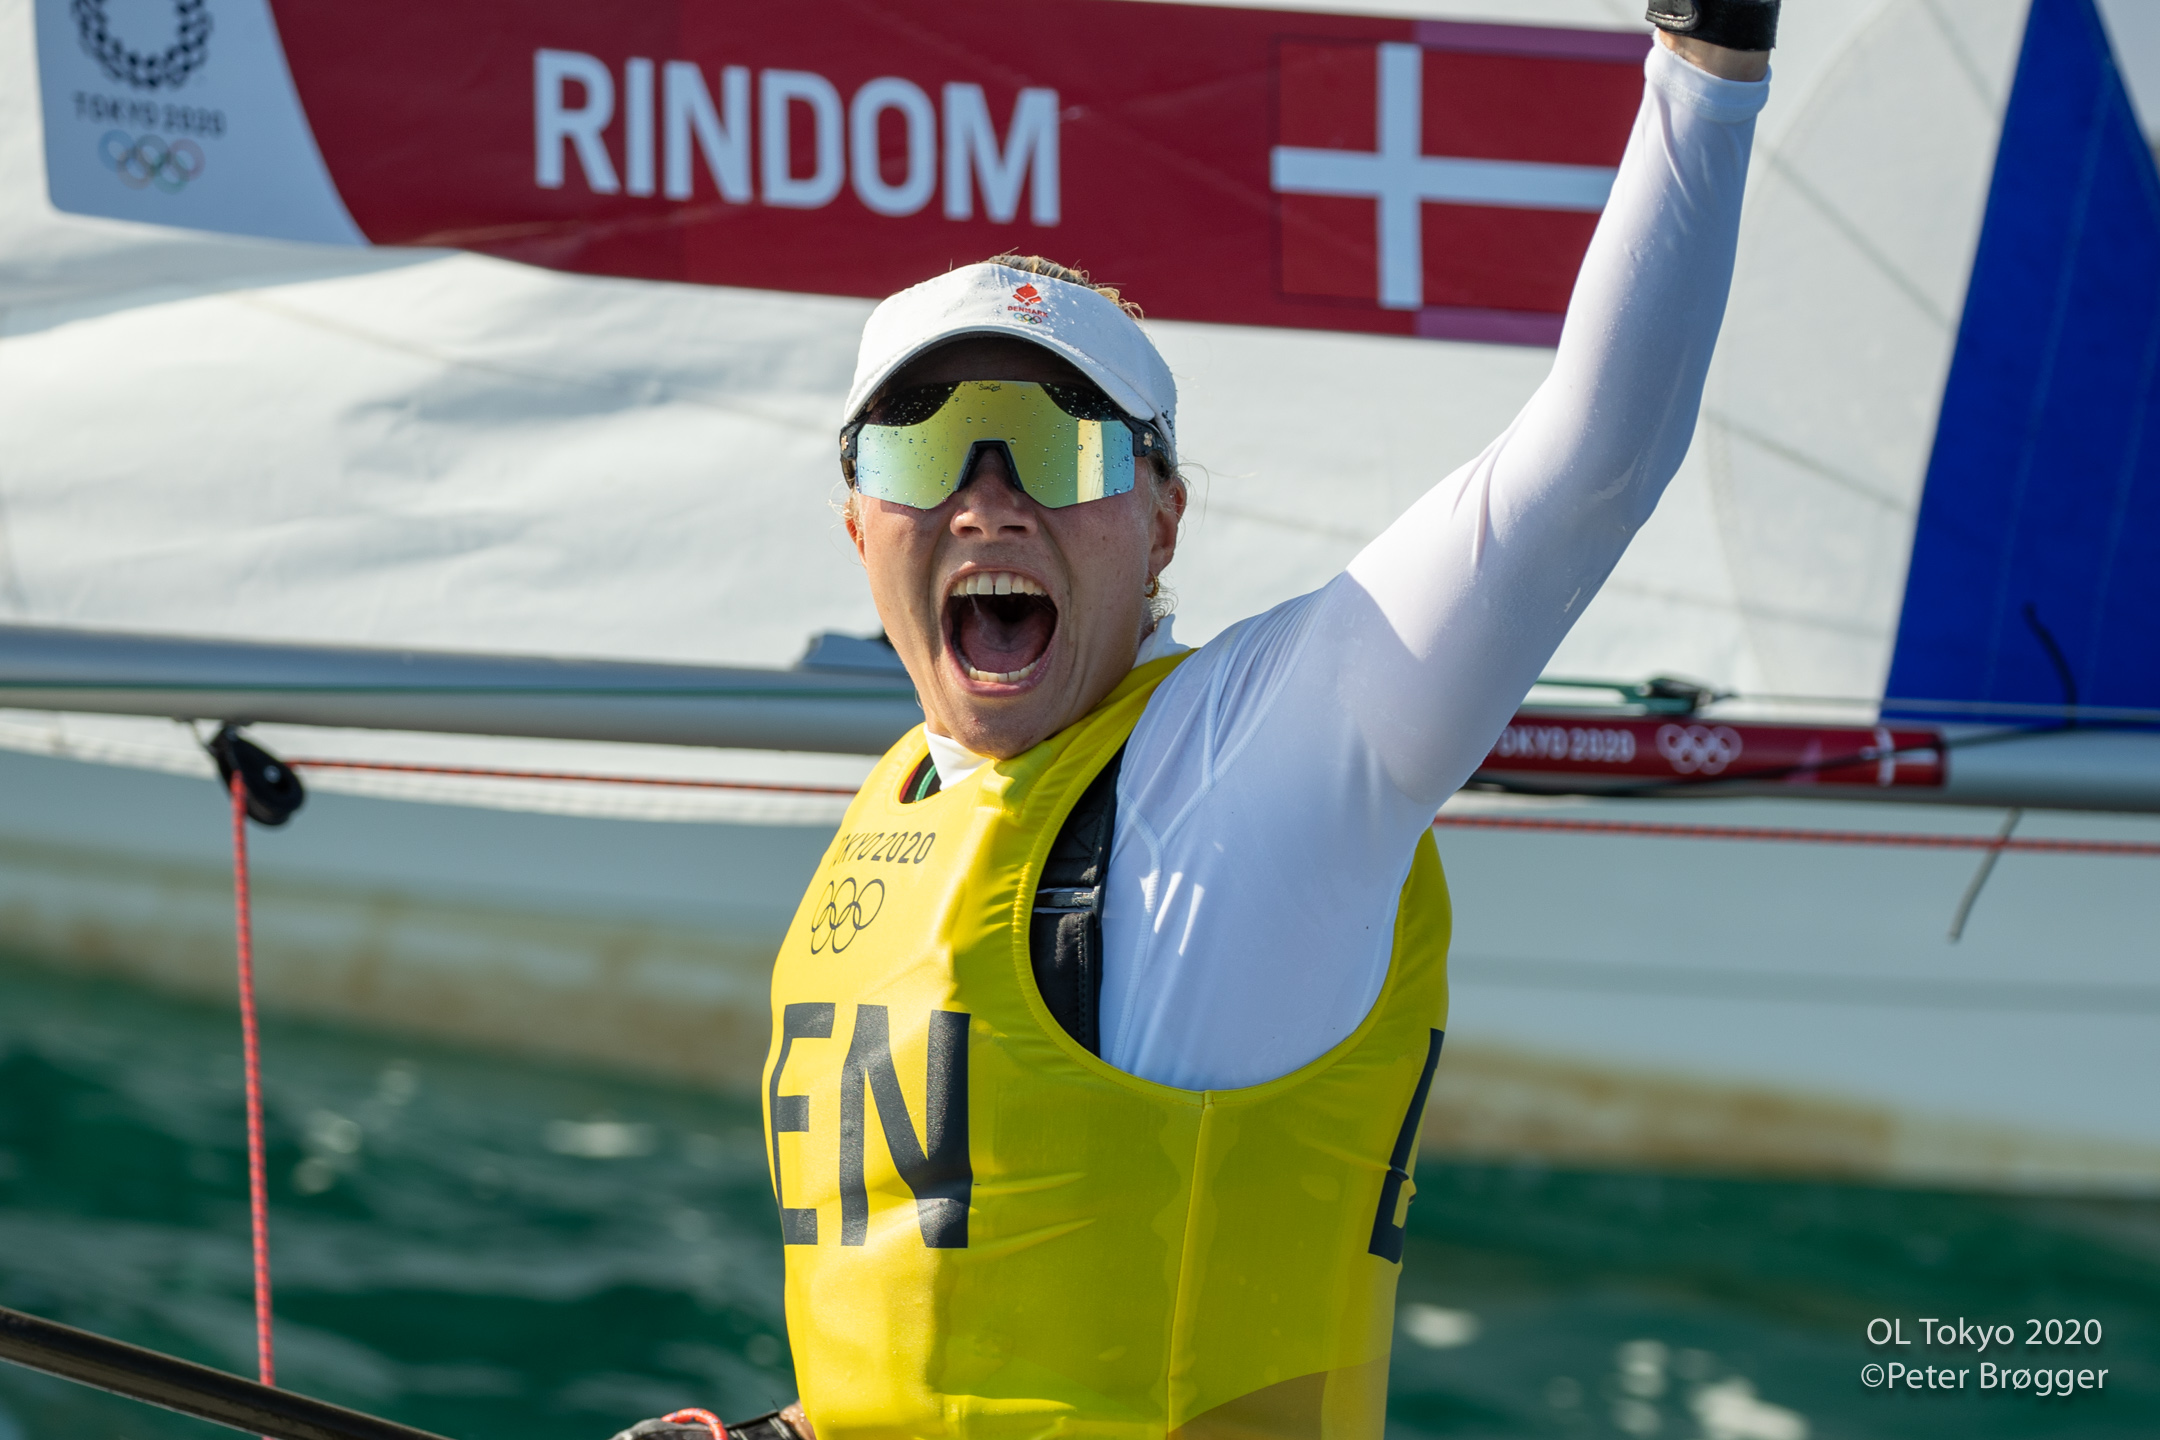 BREAKING. Anne-Marie Rindom ny olympisk mester i Laser efter vildt medal race se fotogalleri Minbaad.dk